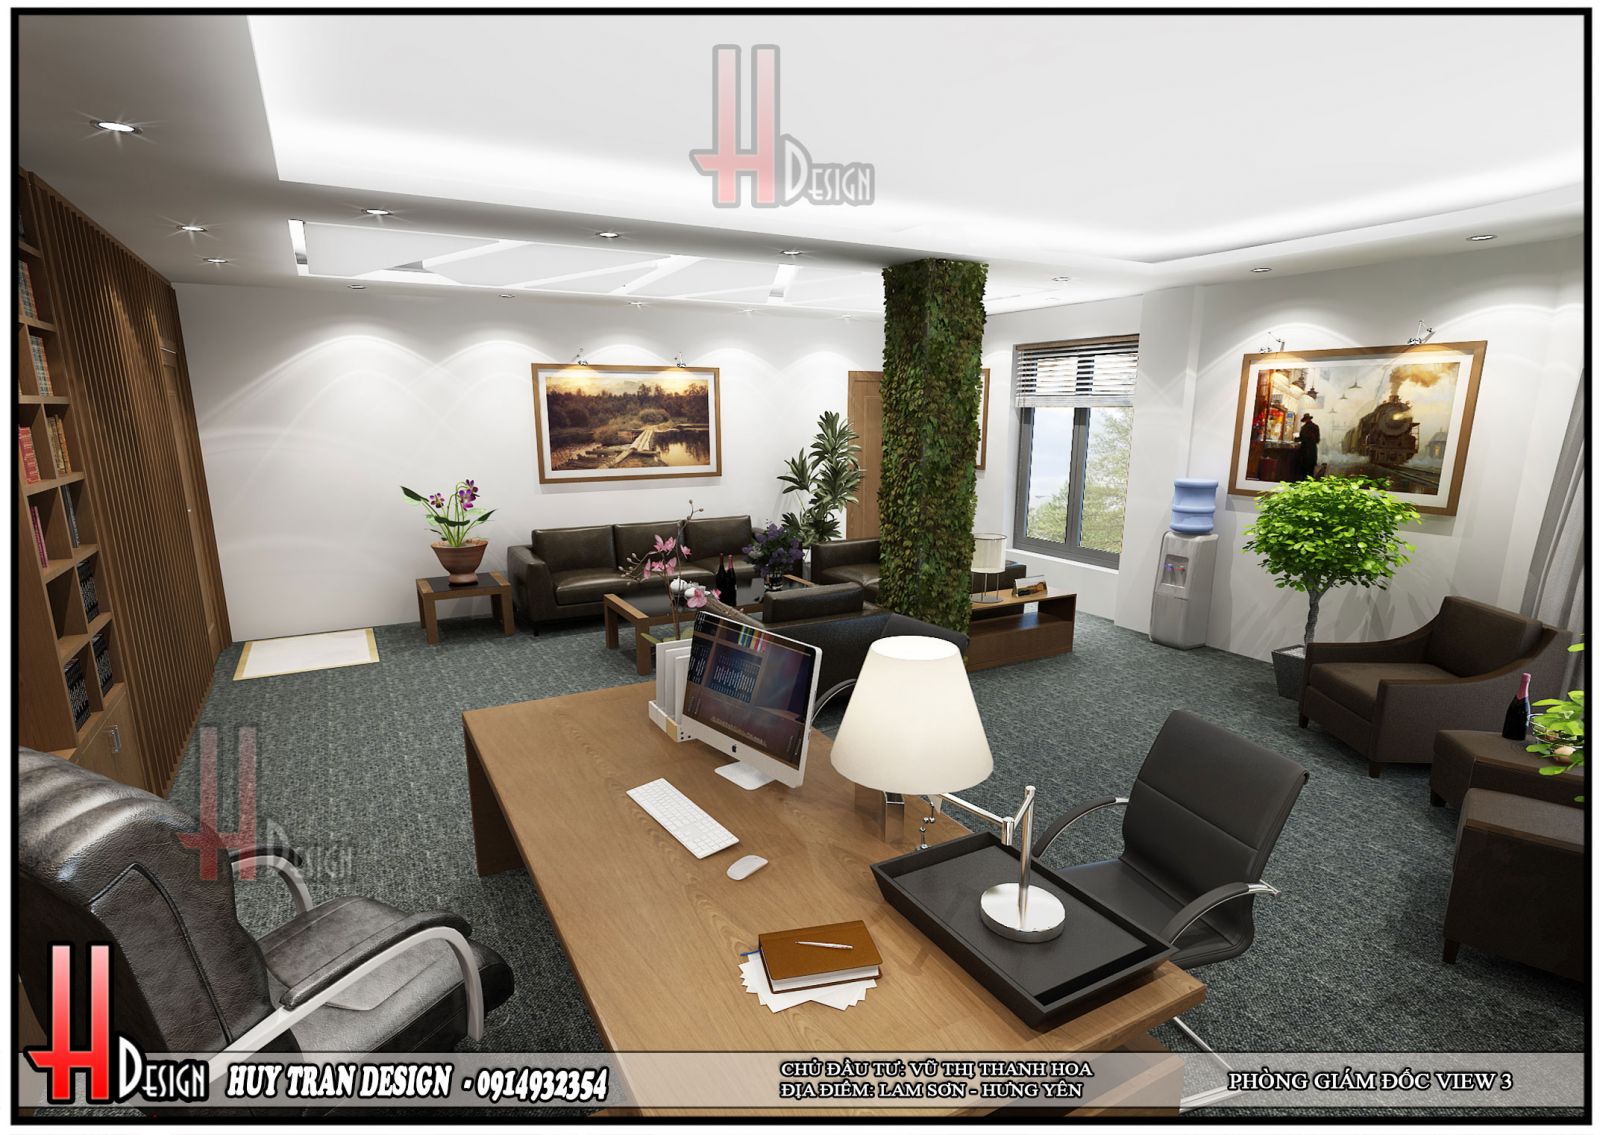 Phối cảnh thiết kế nội thất hiện đại văn phòng làm việc 5 tầng - Huytrandesign tư vấn, thiết kế, thi công, sửa chữa nhà cửa, biệt thự, văn phòng, cơ sở kinh doanh-v3